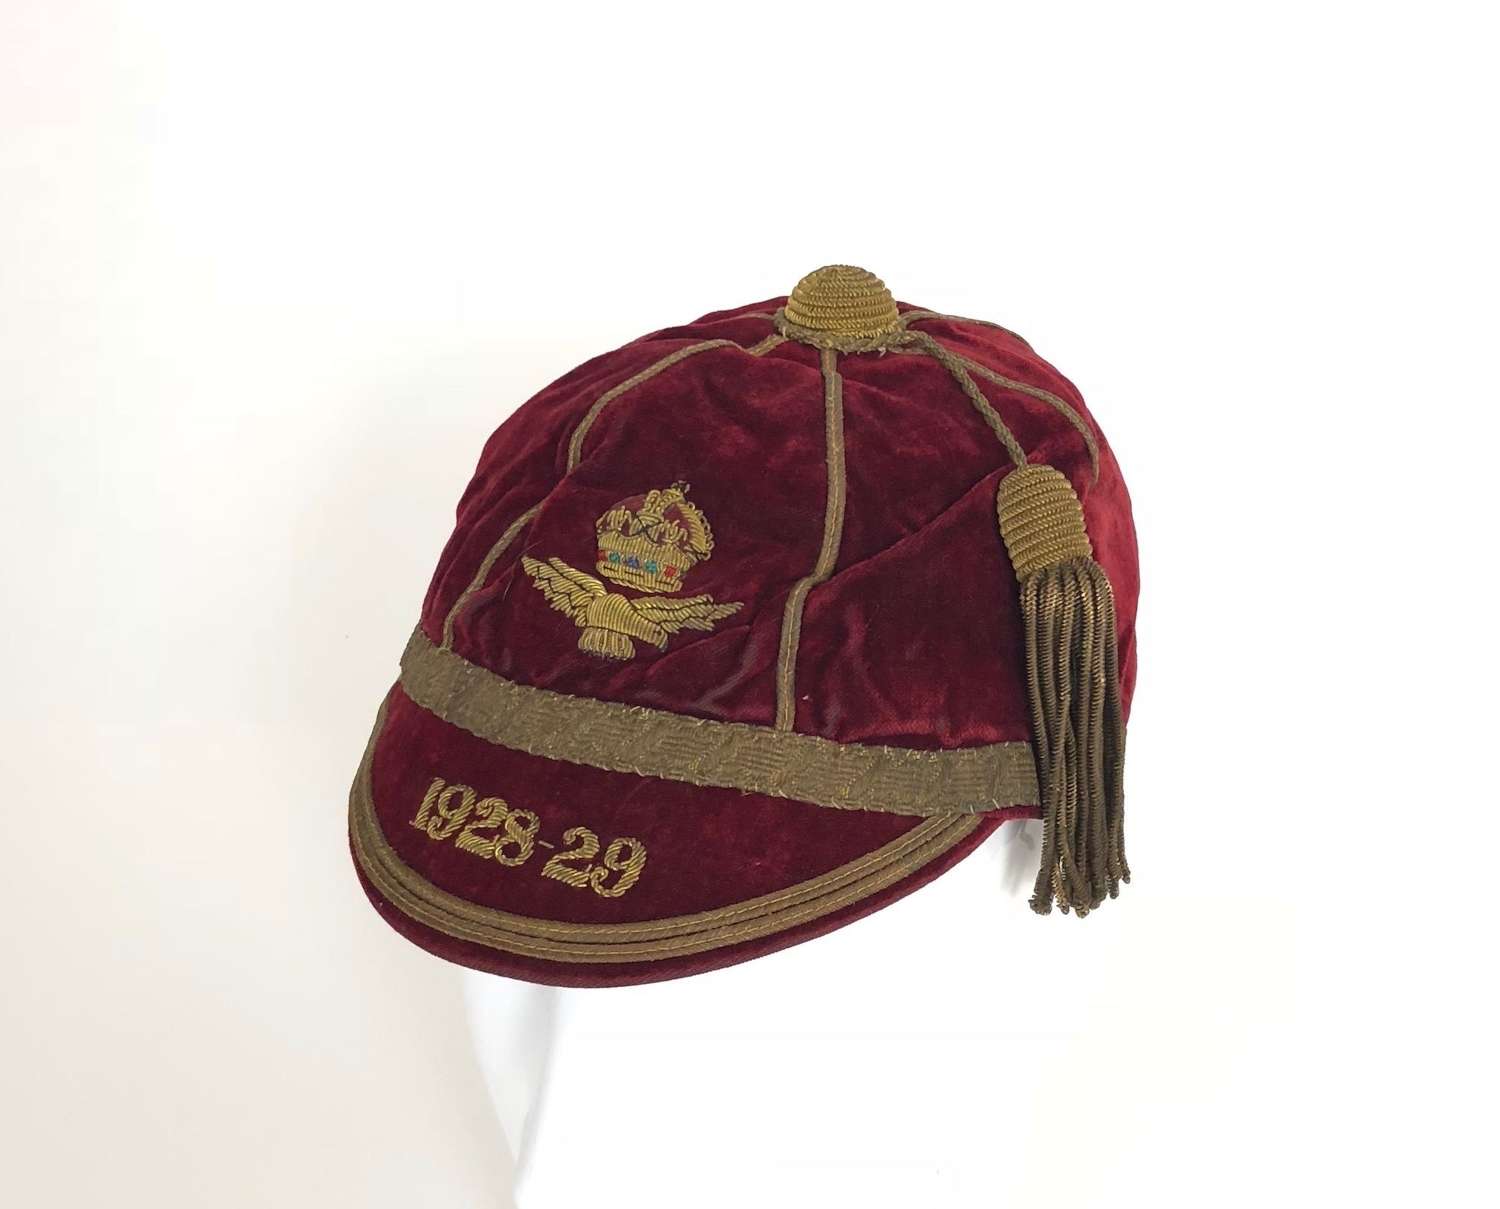 RAF 1928-29 Sports Cap